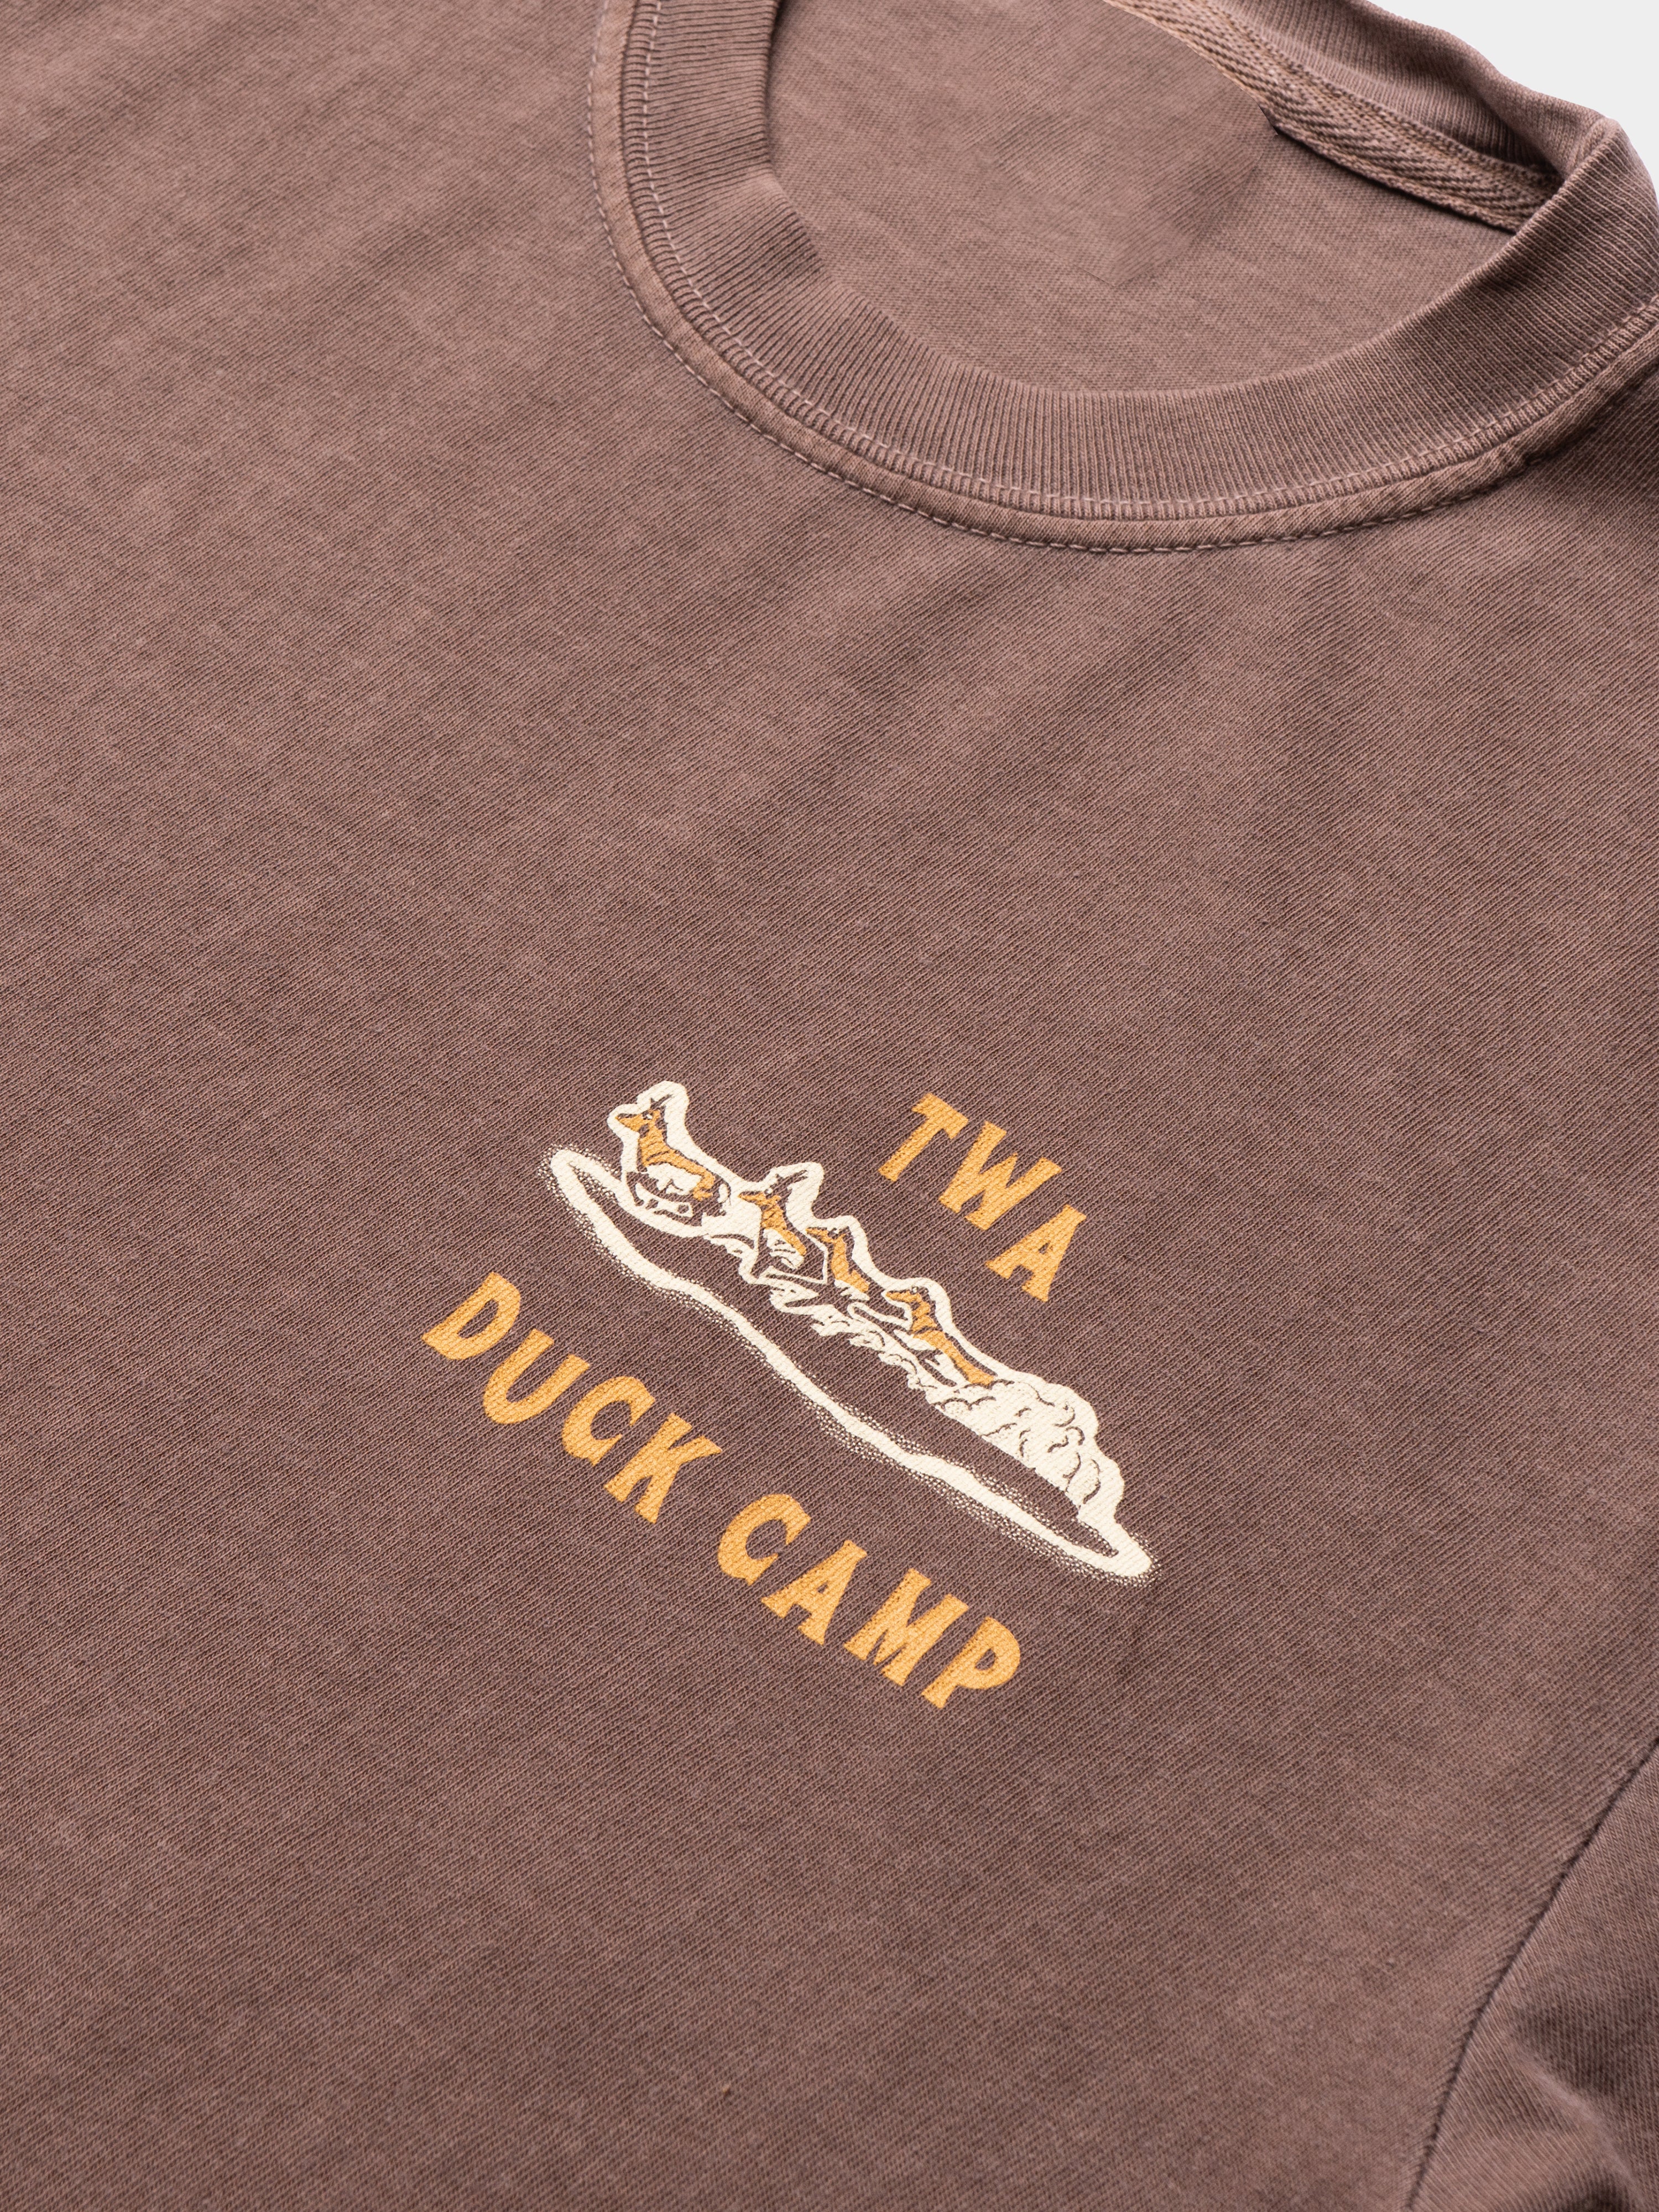 Duck Camp x TWA Pronghorn T-Shirt - Pin Oak